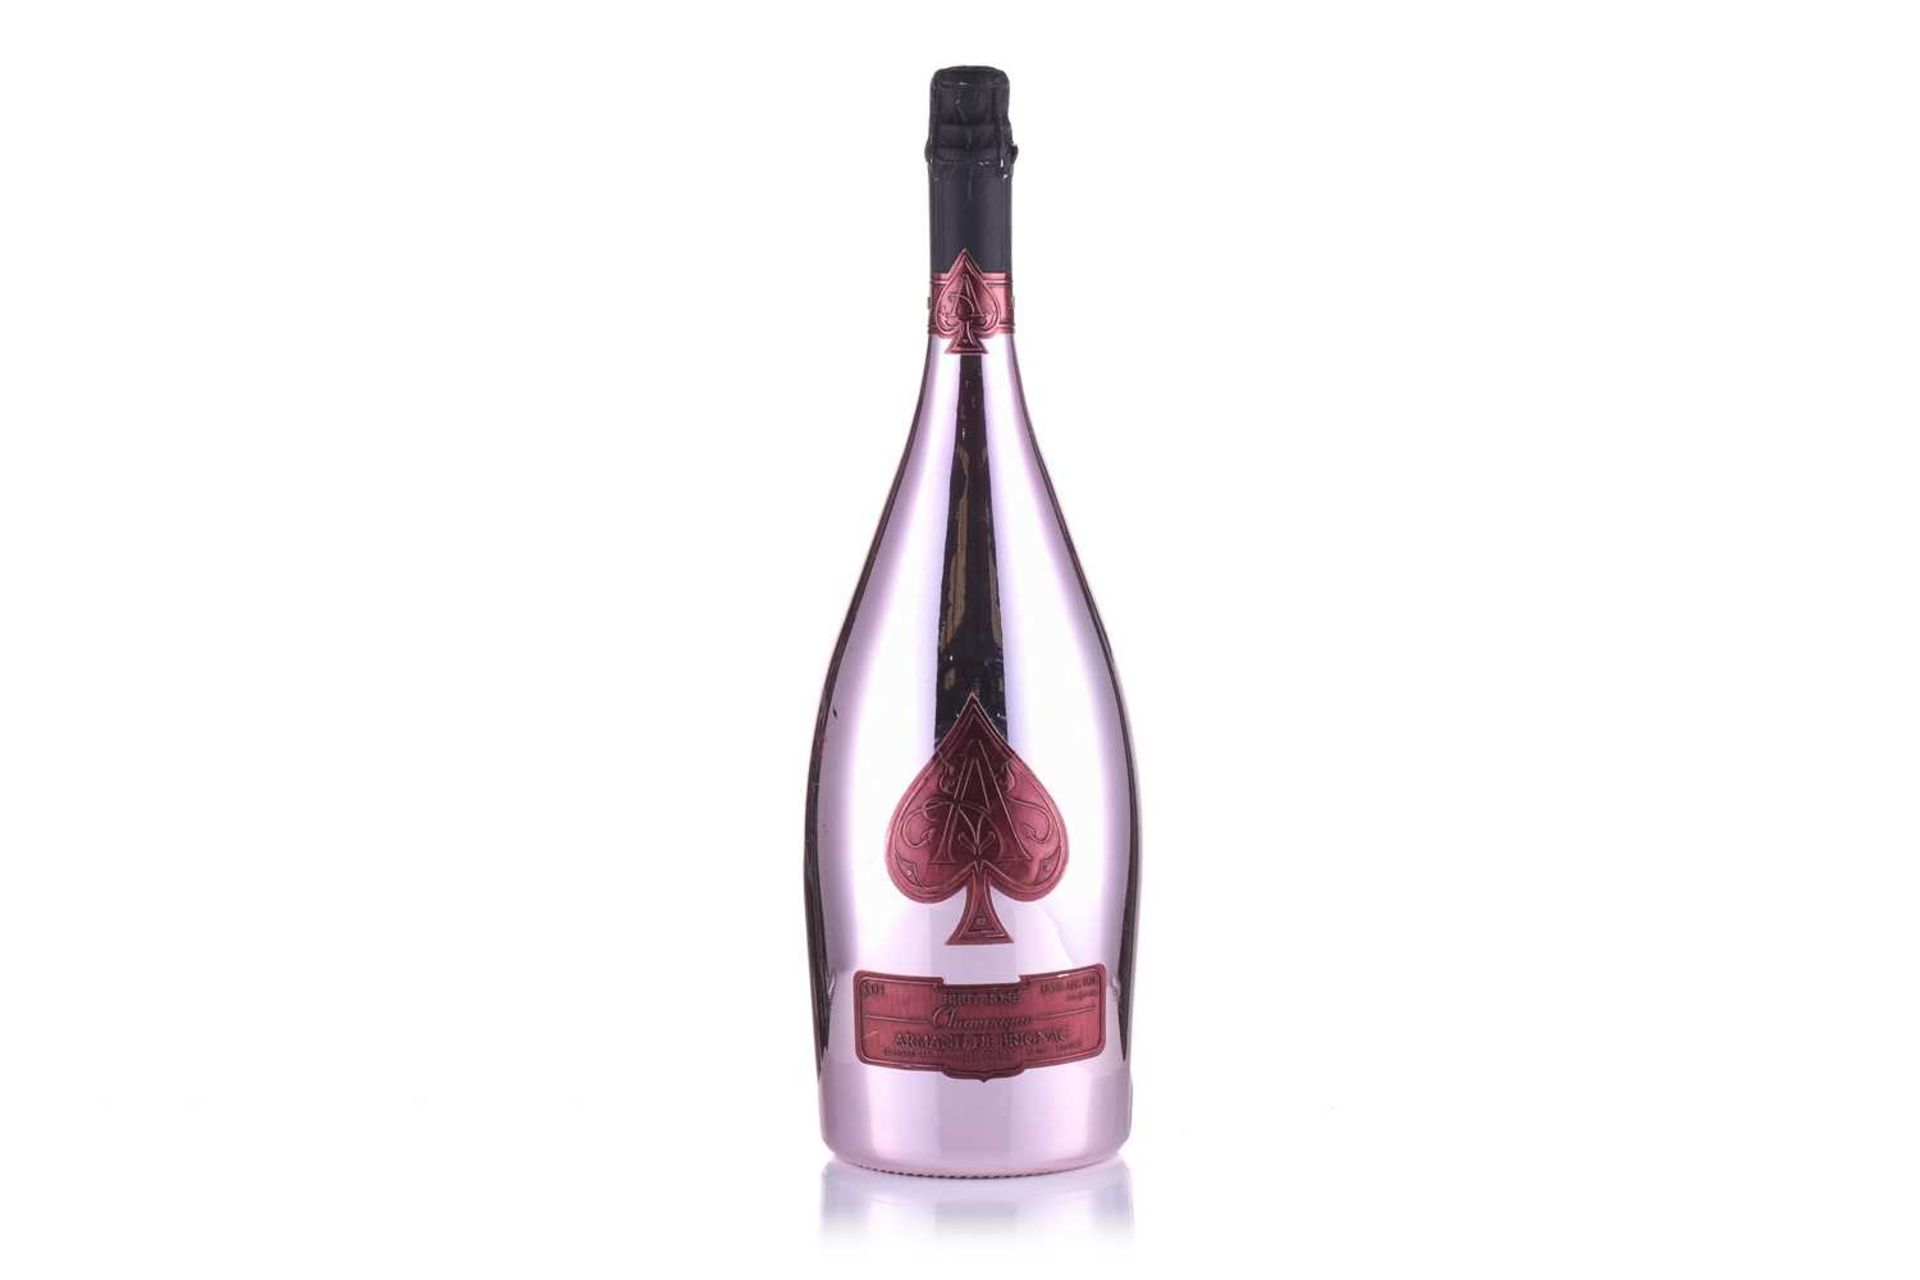 A Jeroboam of Cattier Armand de Brignac Ace of Spades Brut Rose Champagne, 3lt, 12.5%Private